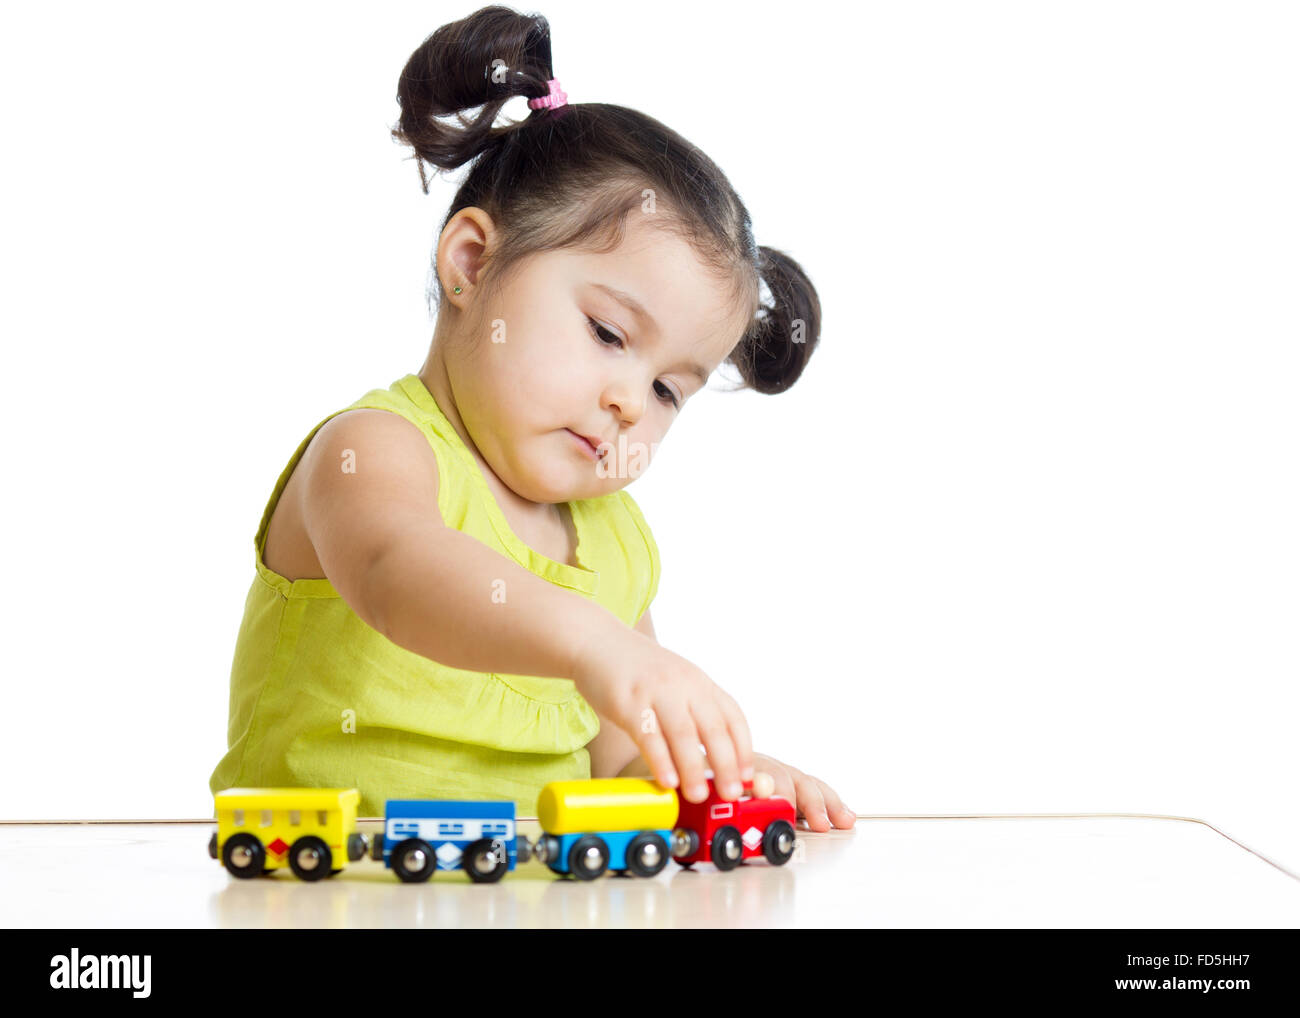 Kid ragazza che gioca con il treno giocattolo Foto Stock